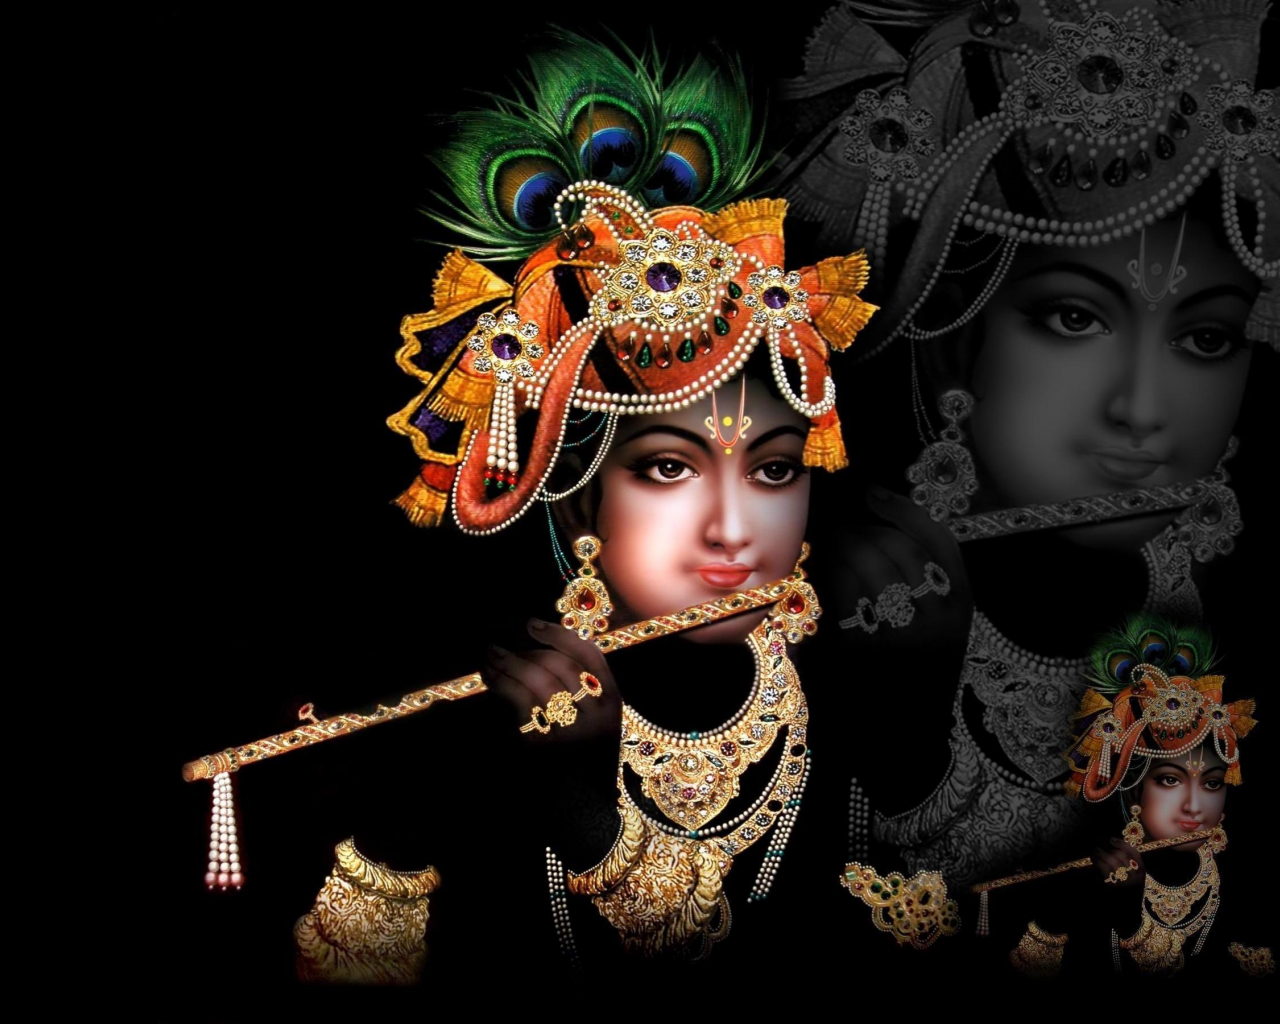 20+] Krishna Dark Wallpapers - WallpaperSafari